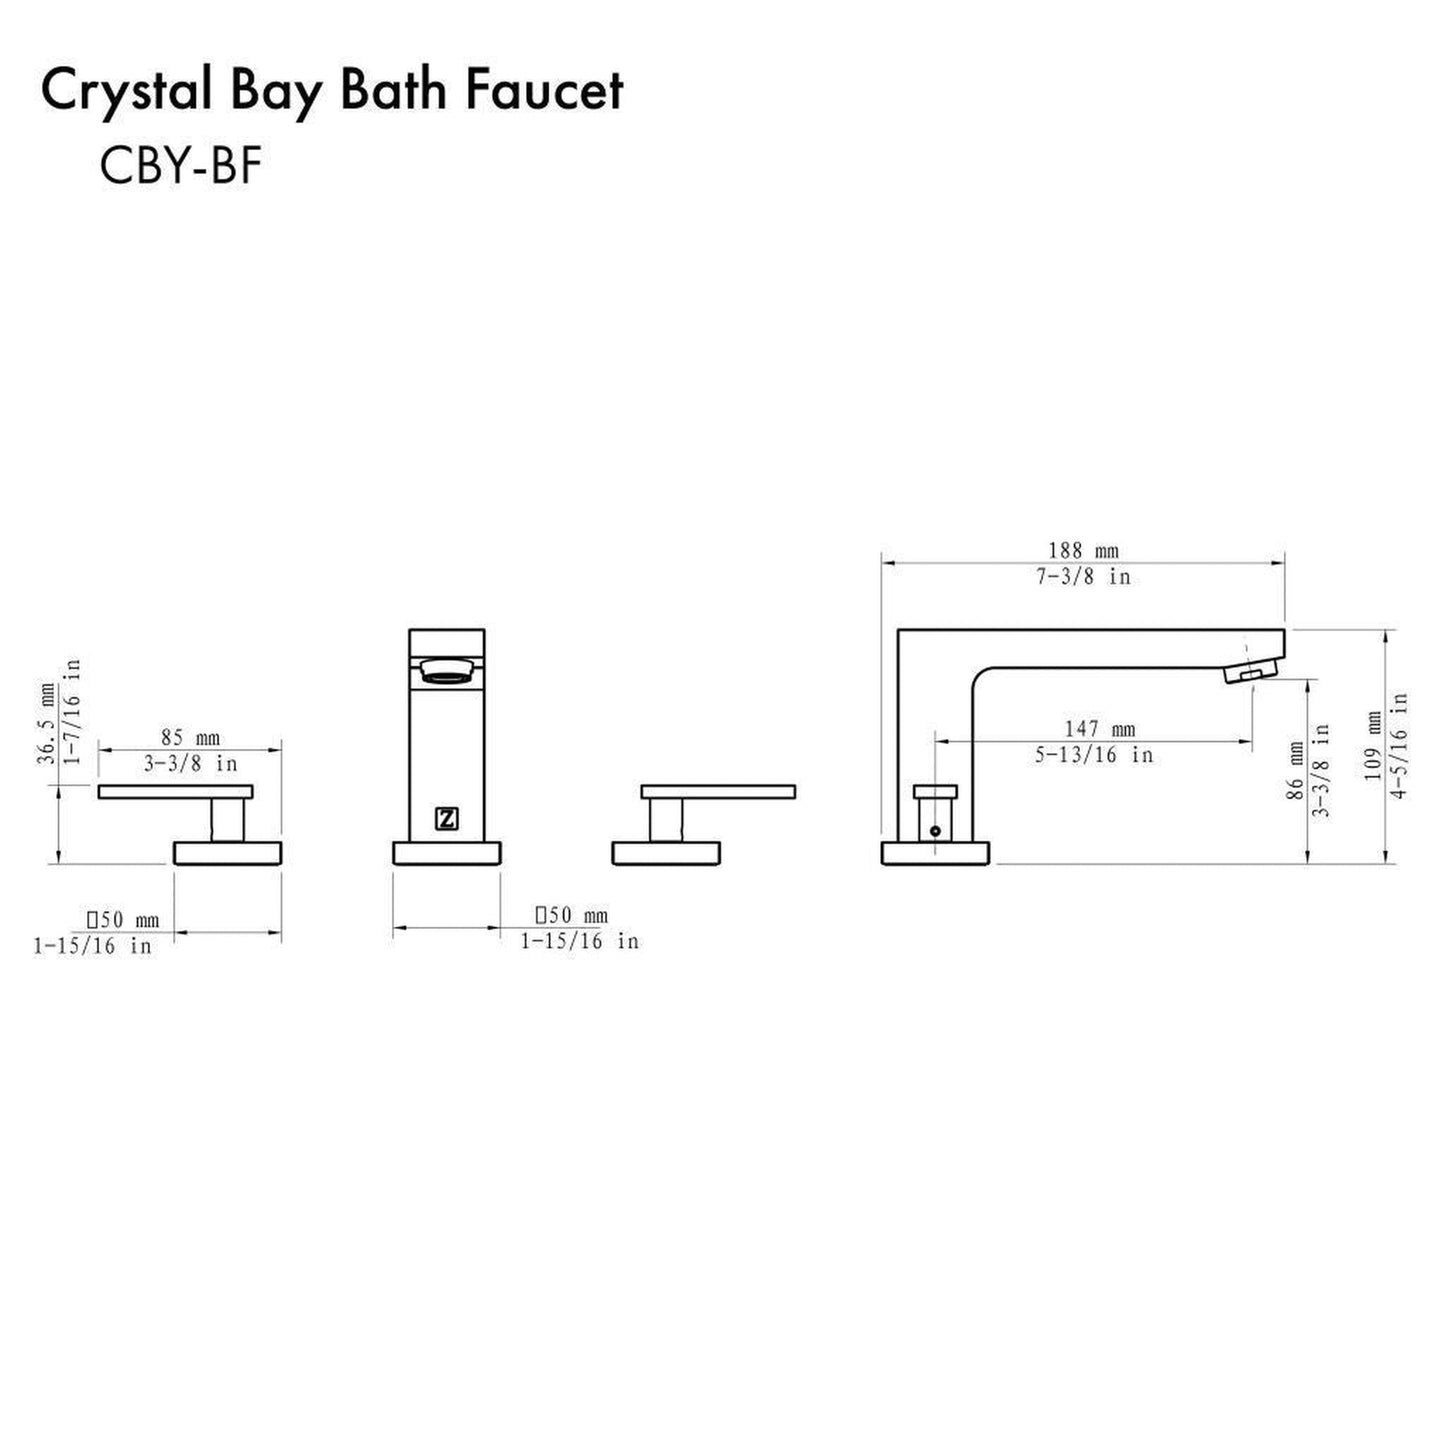 ZLINE Crystal Bay Widespread 1.5 GPM Gun Metal Bathroom Faucet With Drain